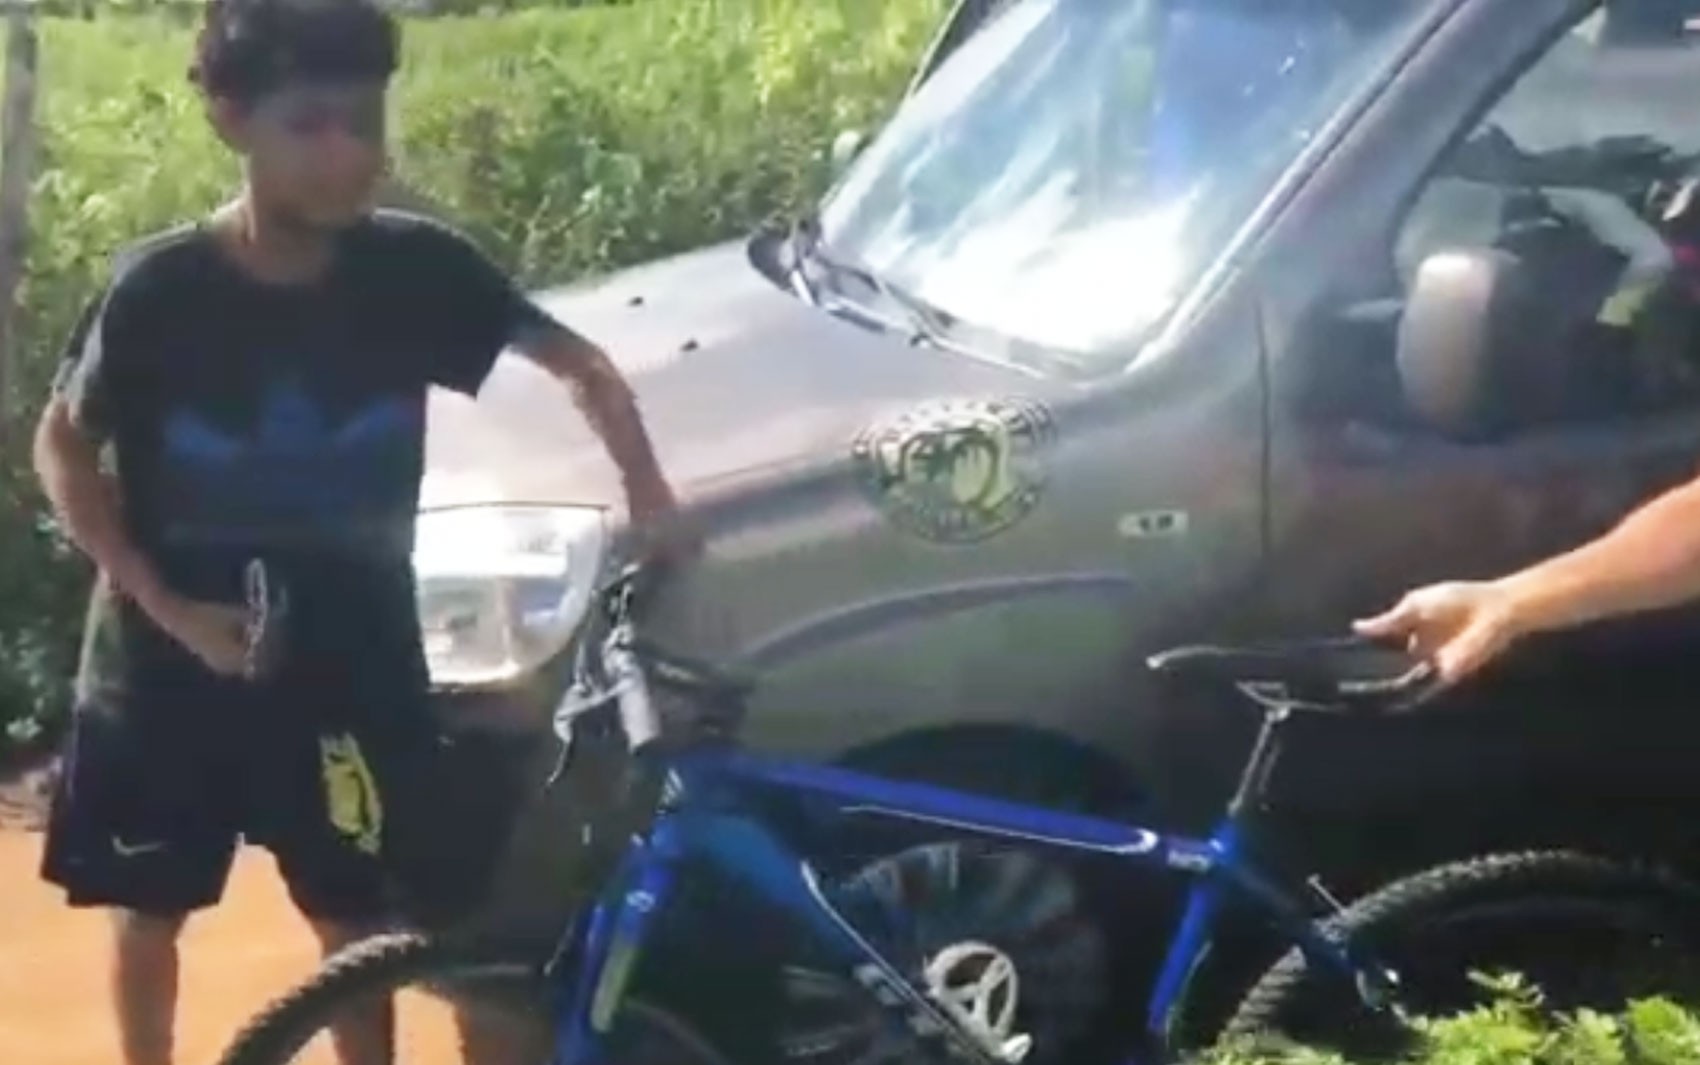 Garoto ajuda ciclistas perdidos na BA, é surpreendido com bicicleta nova dias depois e se emociona; vídeo viralizou